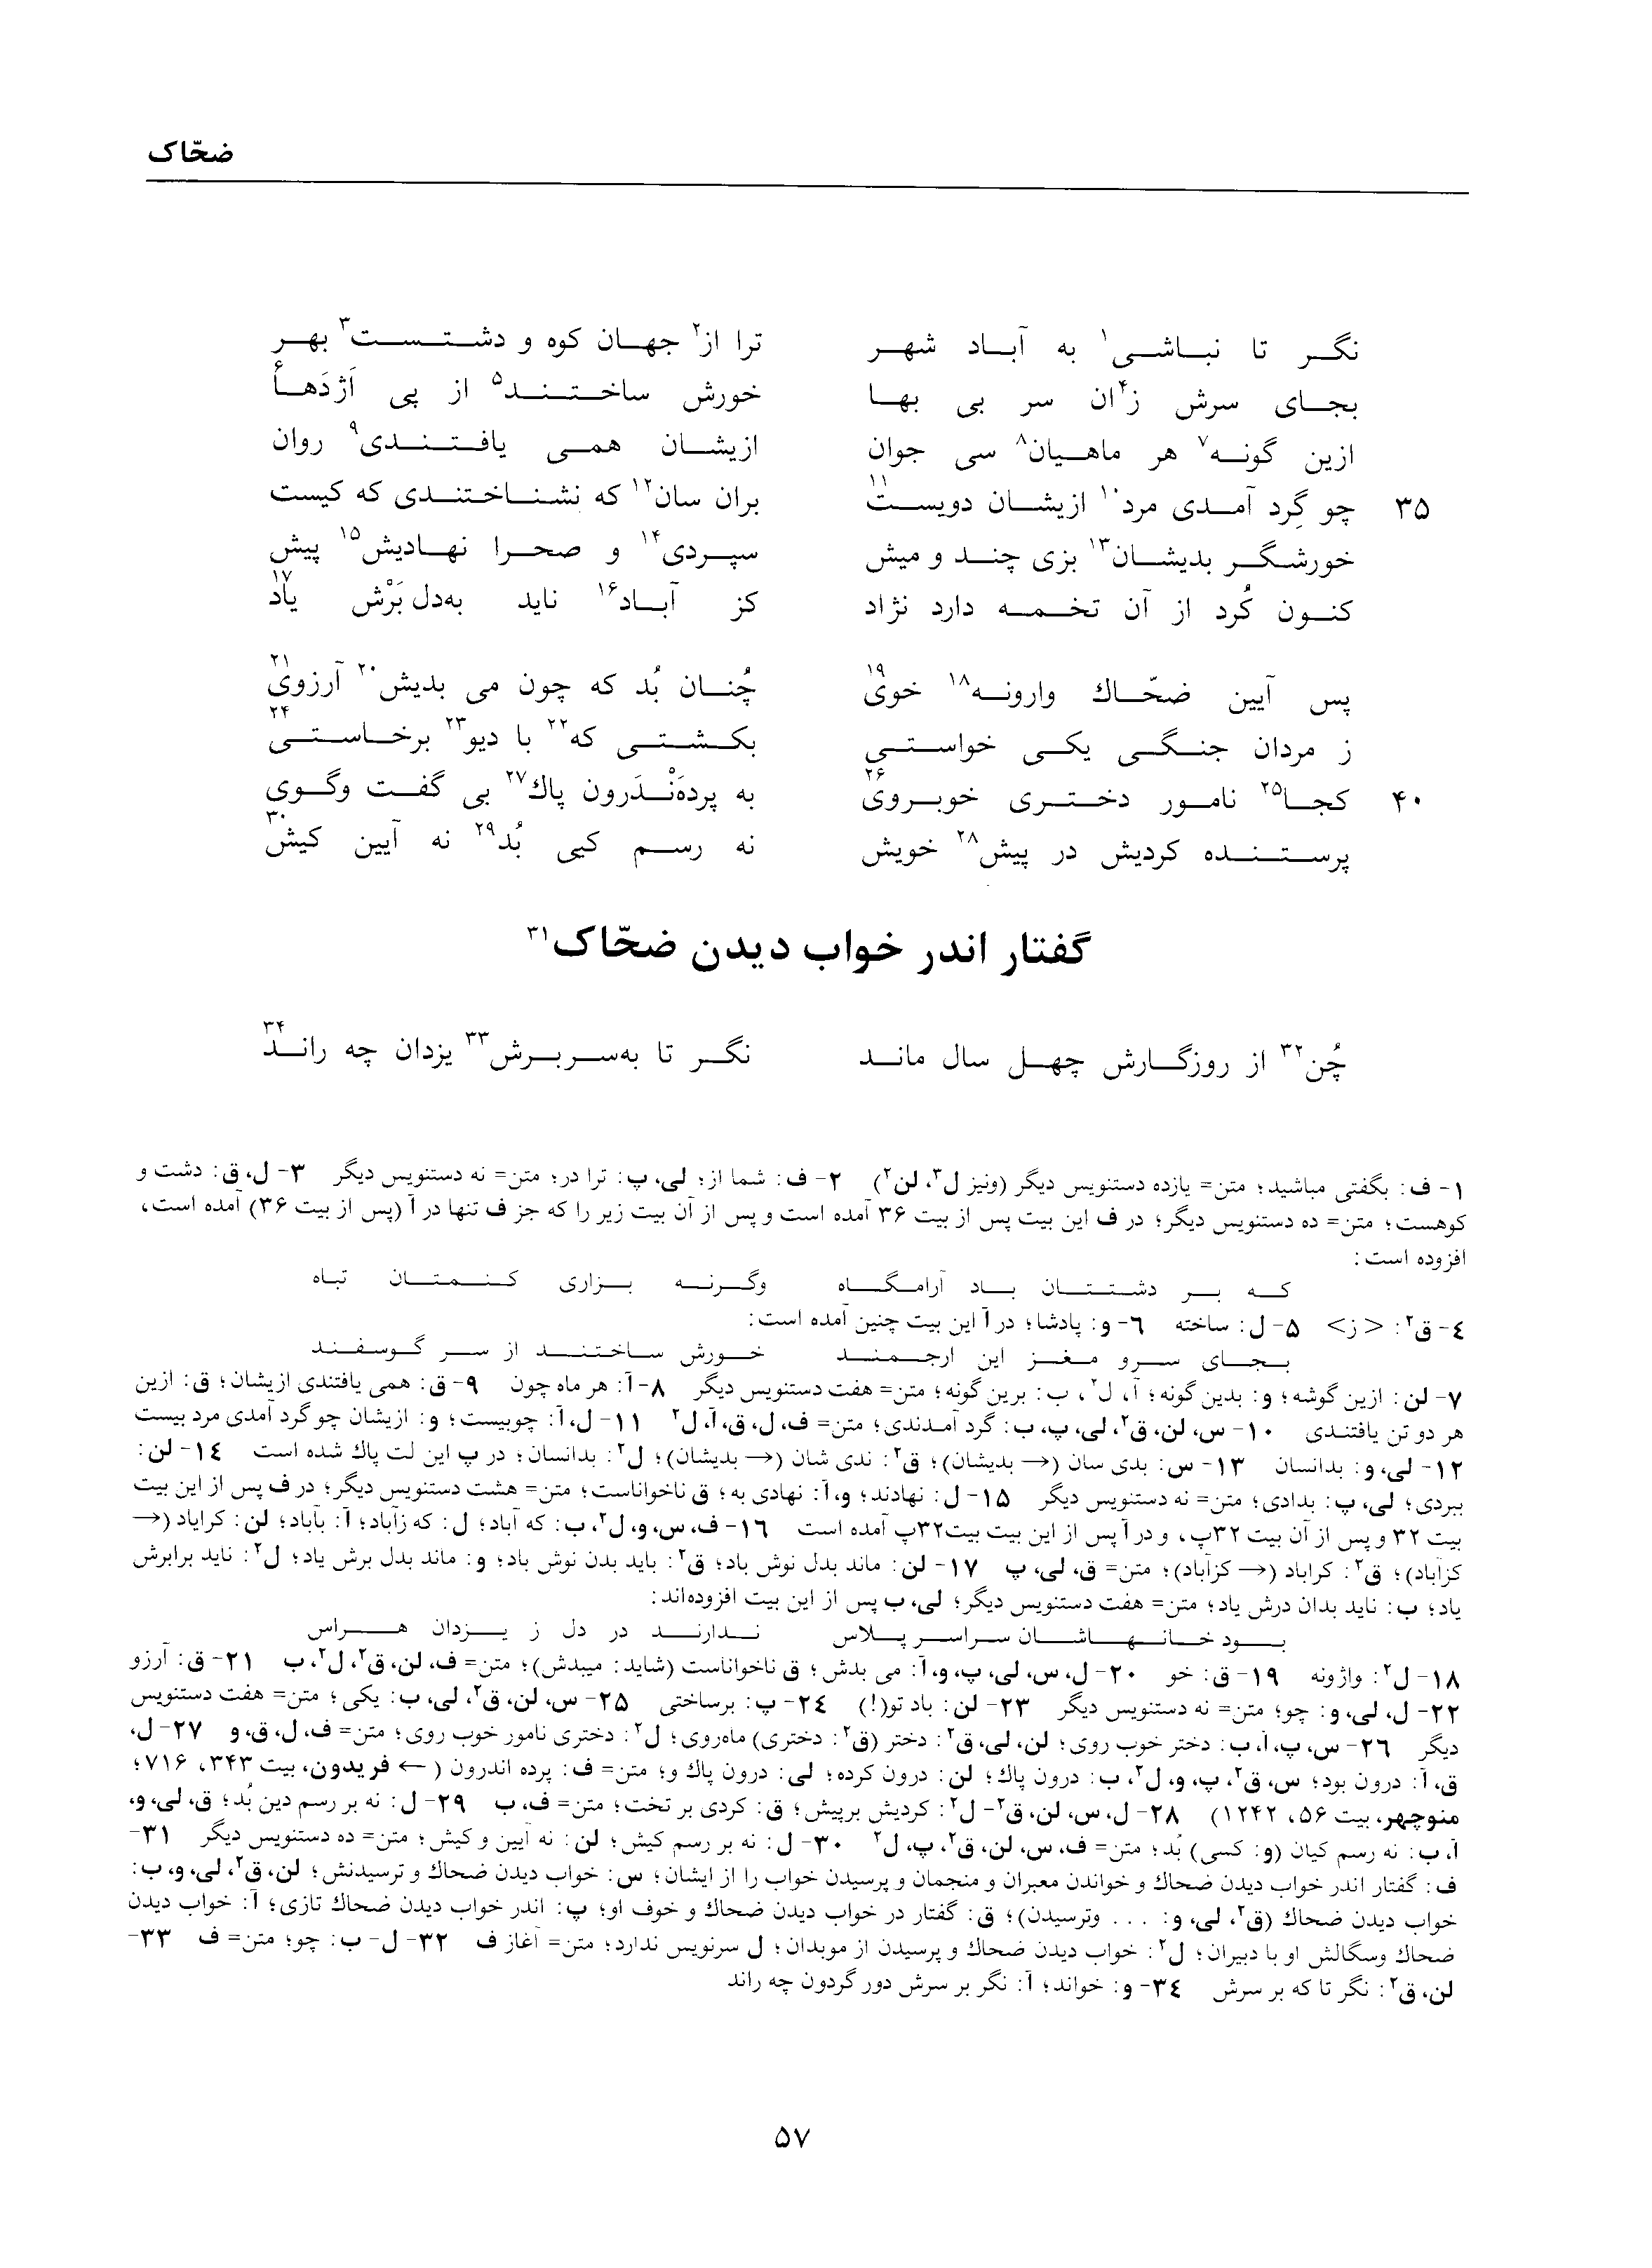 vol. 1, p. 57